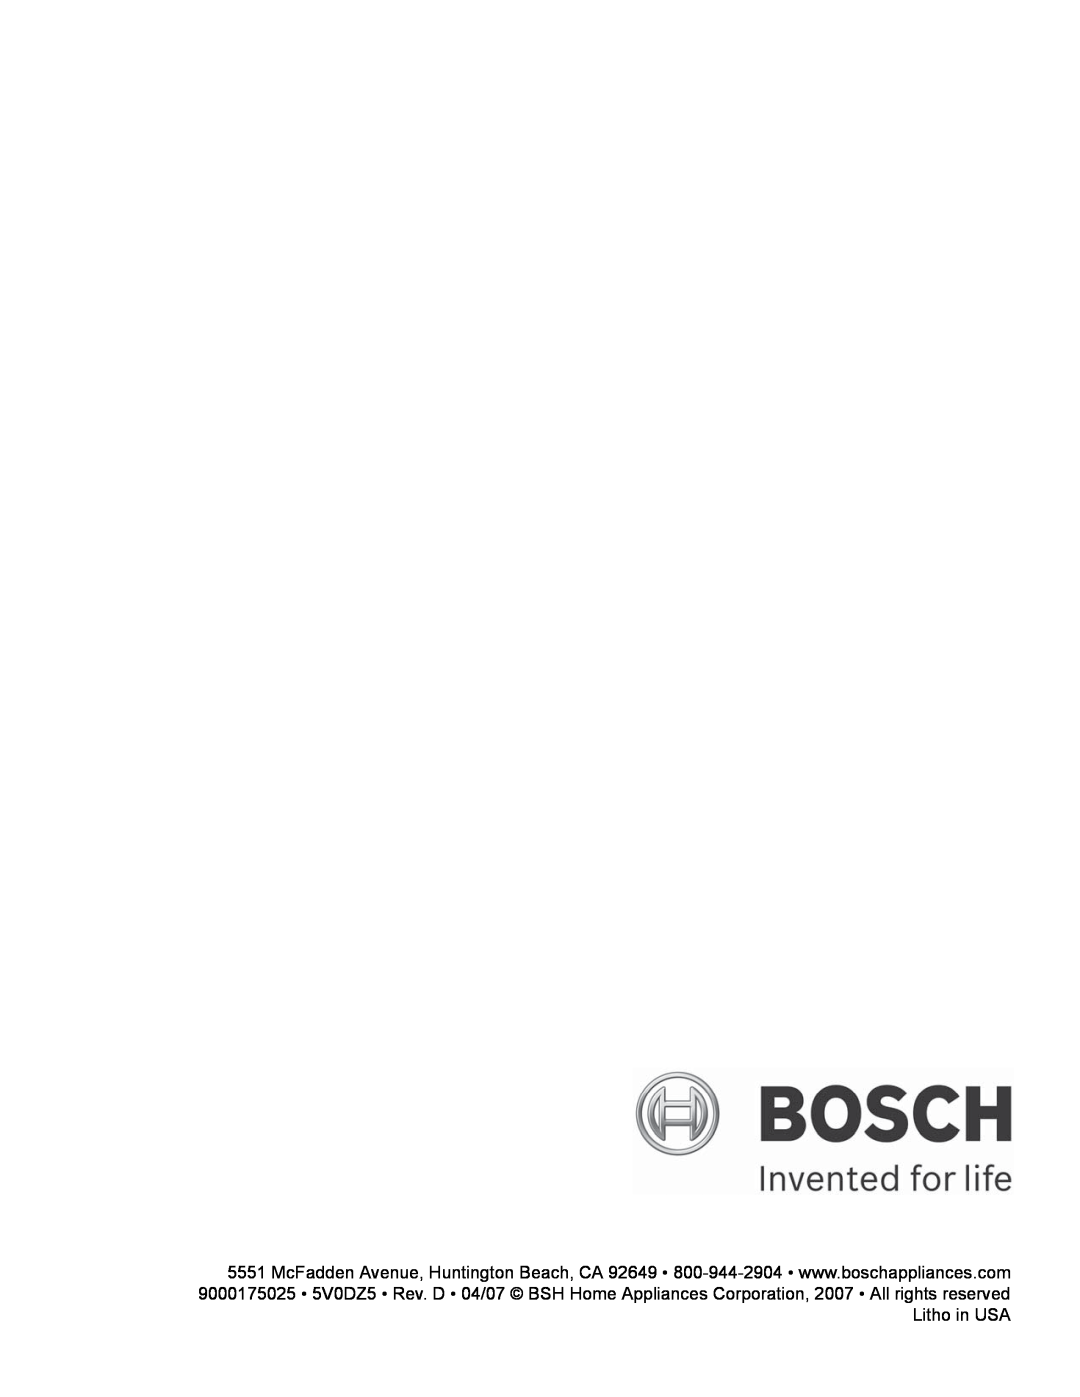 Bosch Appliances HBL54, HBL57, HBL56, HBN56, HBN54 manual 